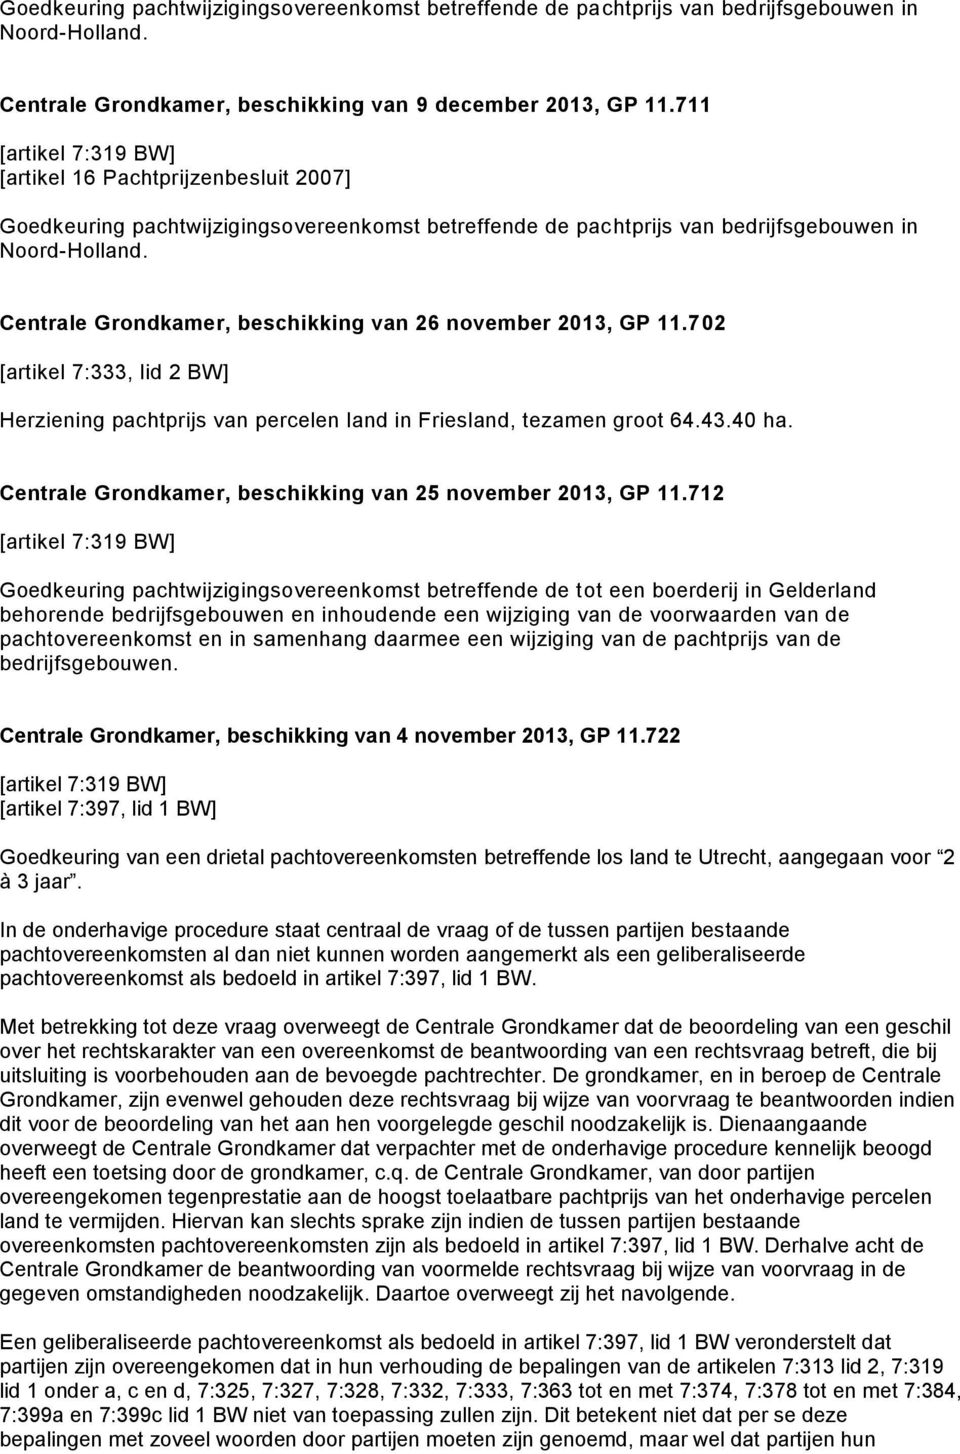 Centrale Grondkamer, beschikking van 26 november 2013, GP 11.702 Herziening pachtprijs van percelen land in Friesland, tezamen groot 64.43.40 ha.